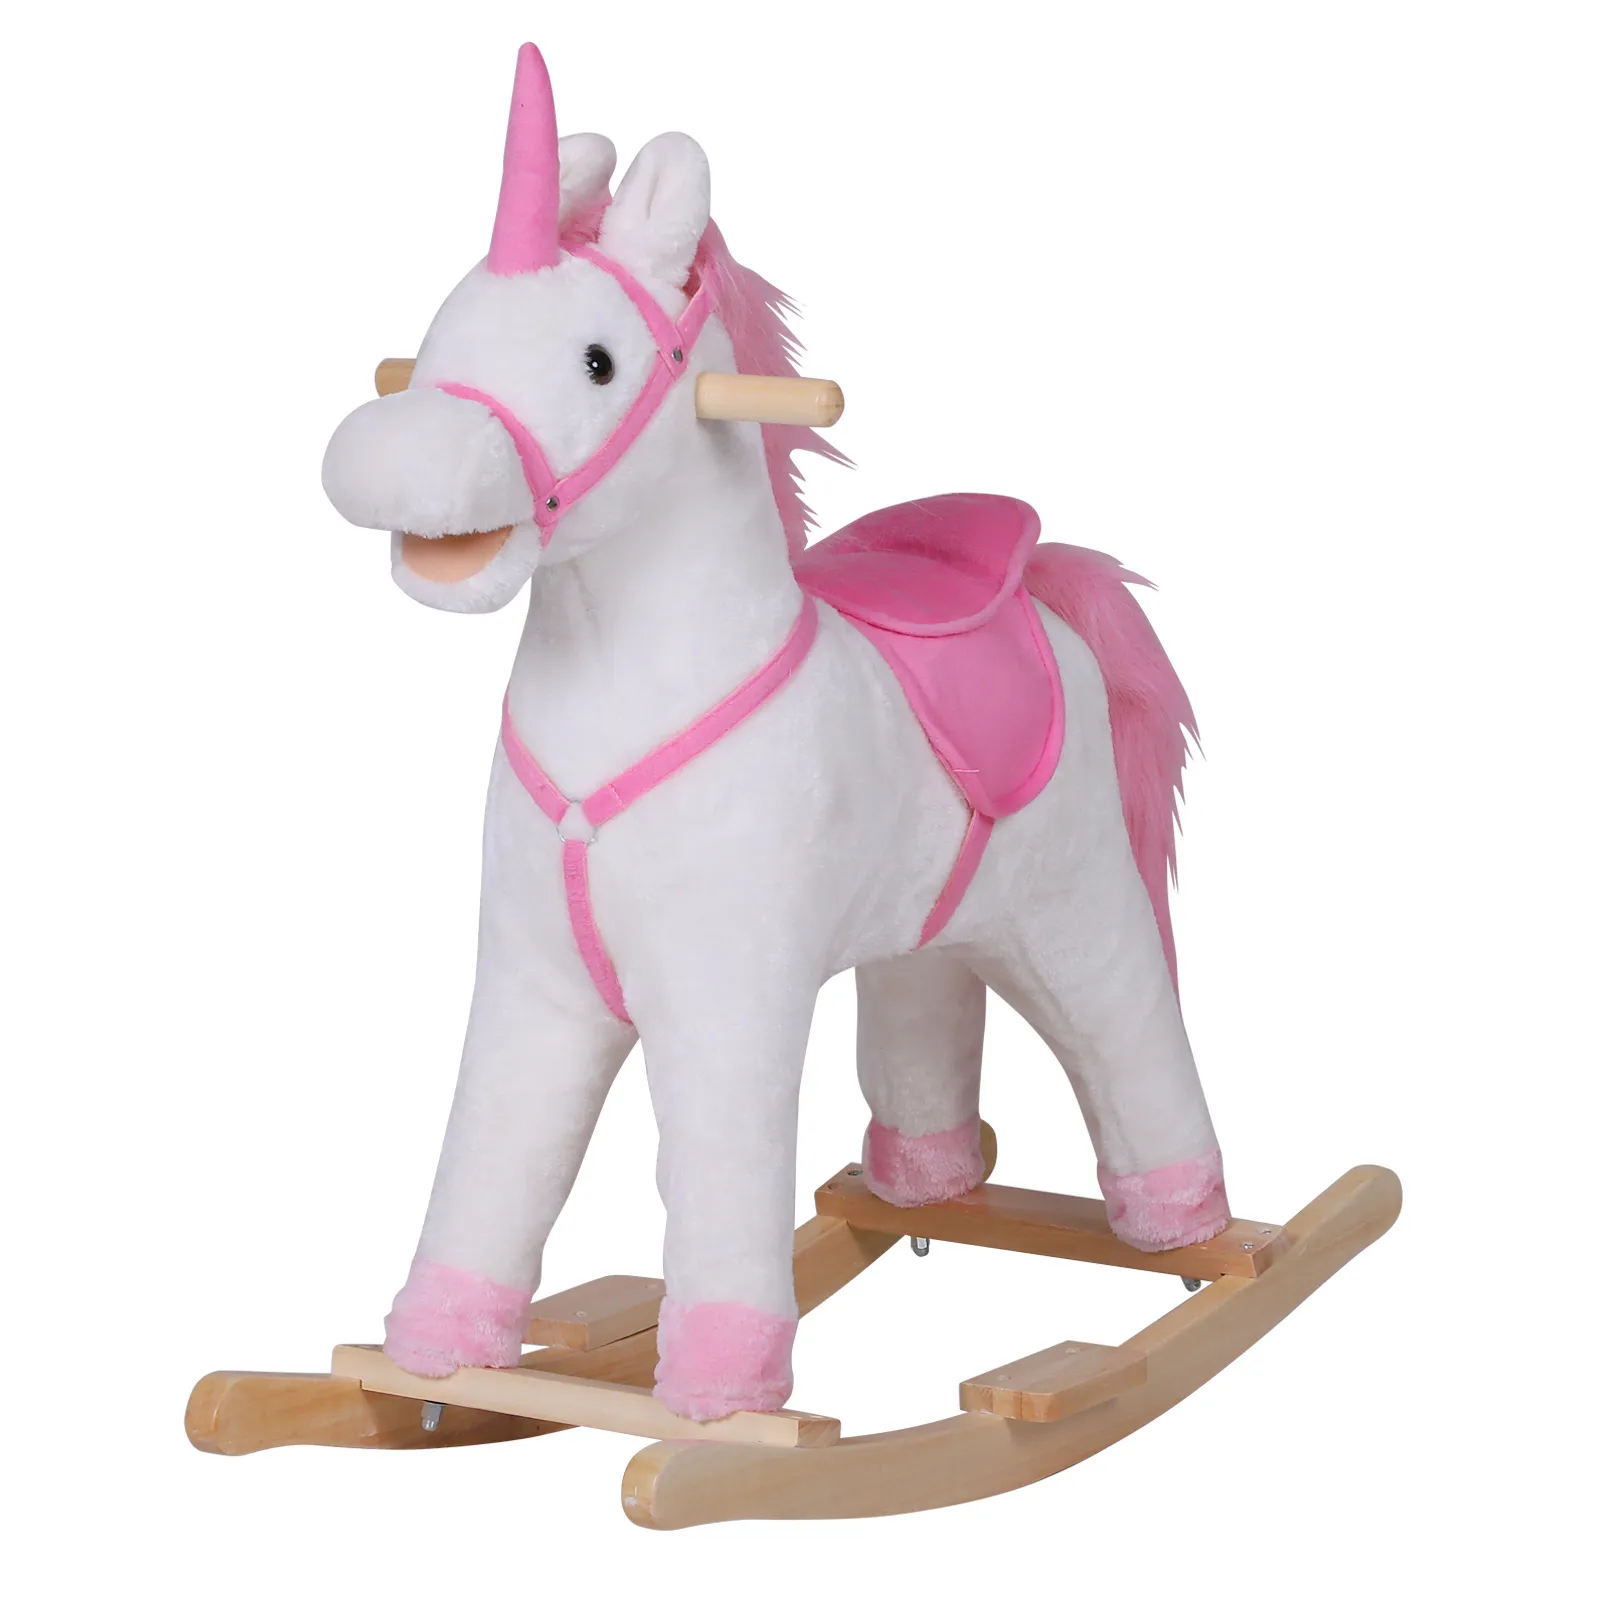  Cavallo a Dondolo Unicorno  in Legno Giocattolo Cavalcabile per Bambini Peluche 78 × 28 × 68cm Rosa